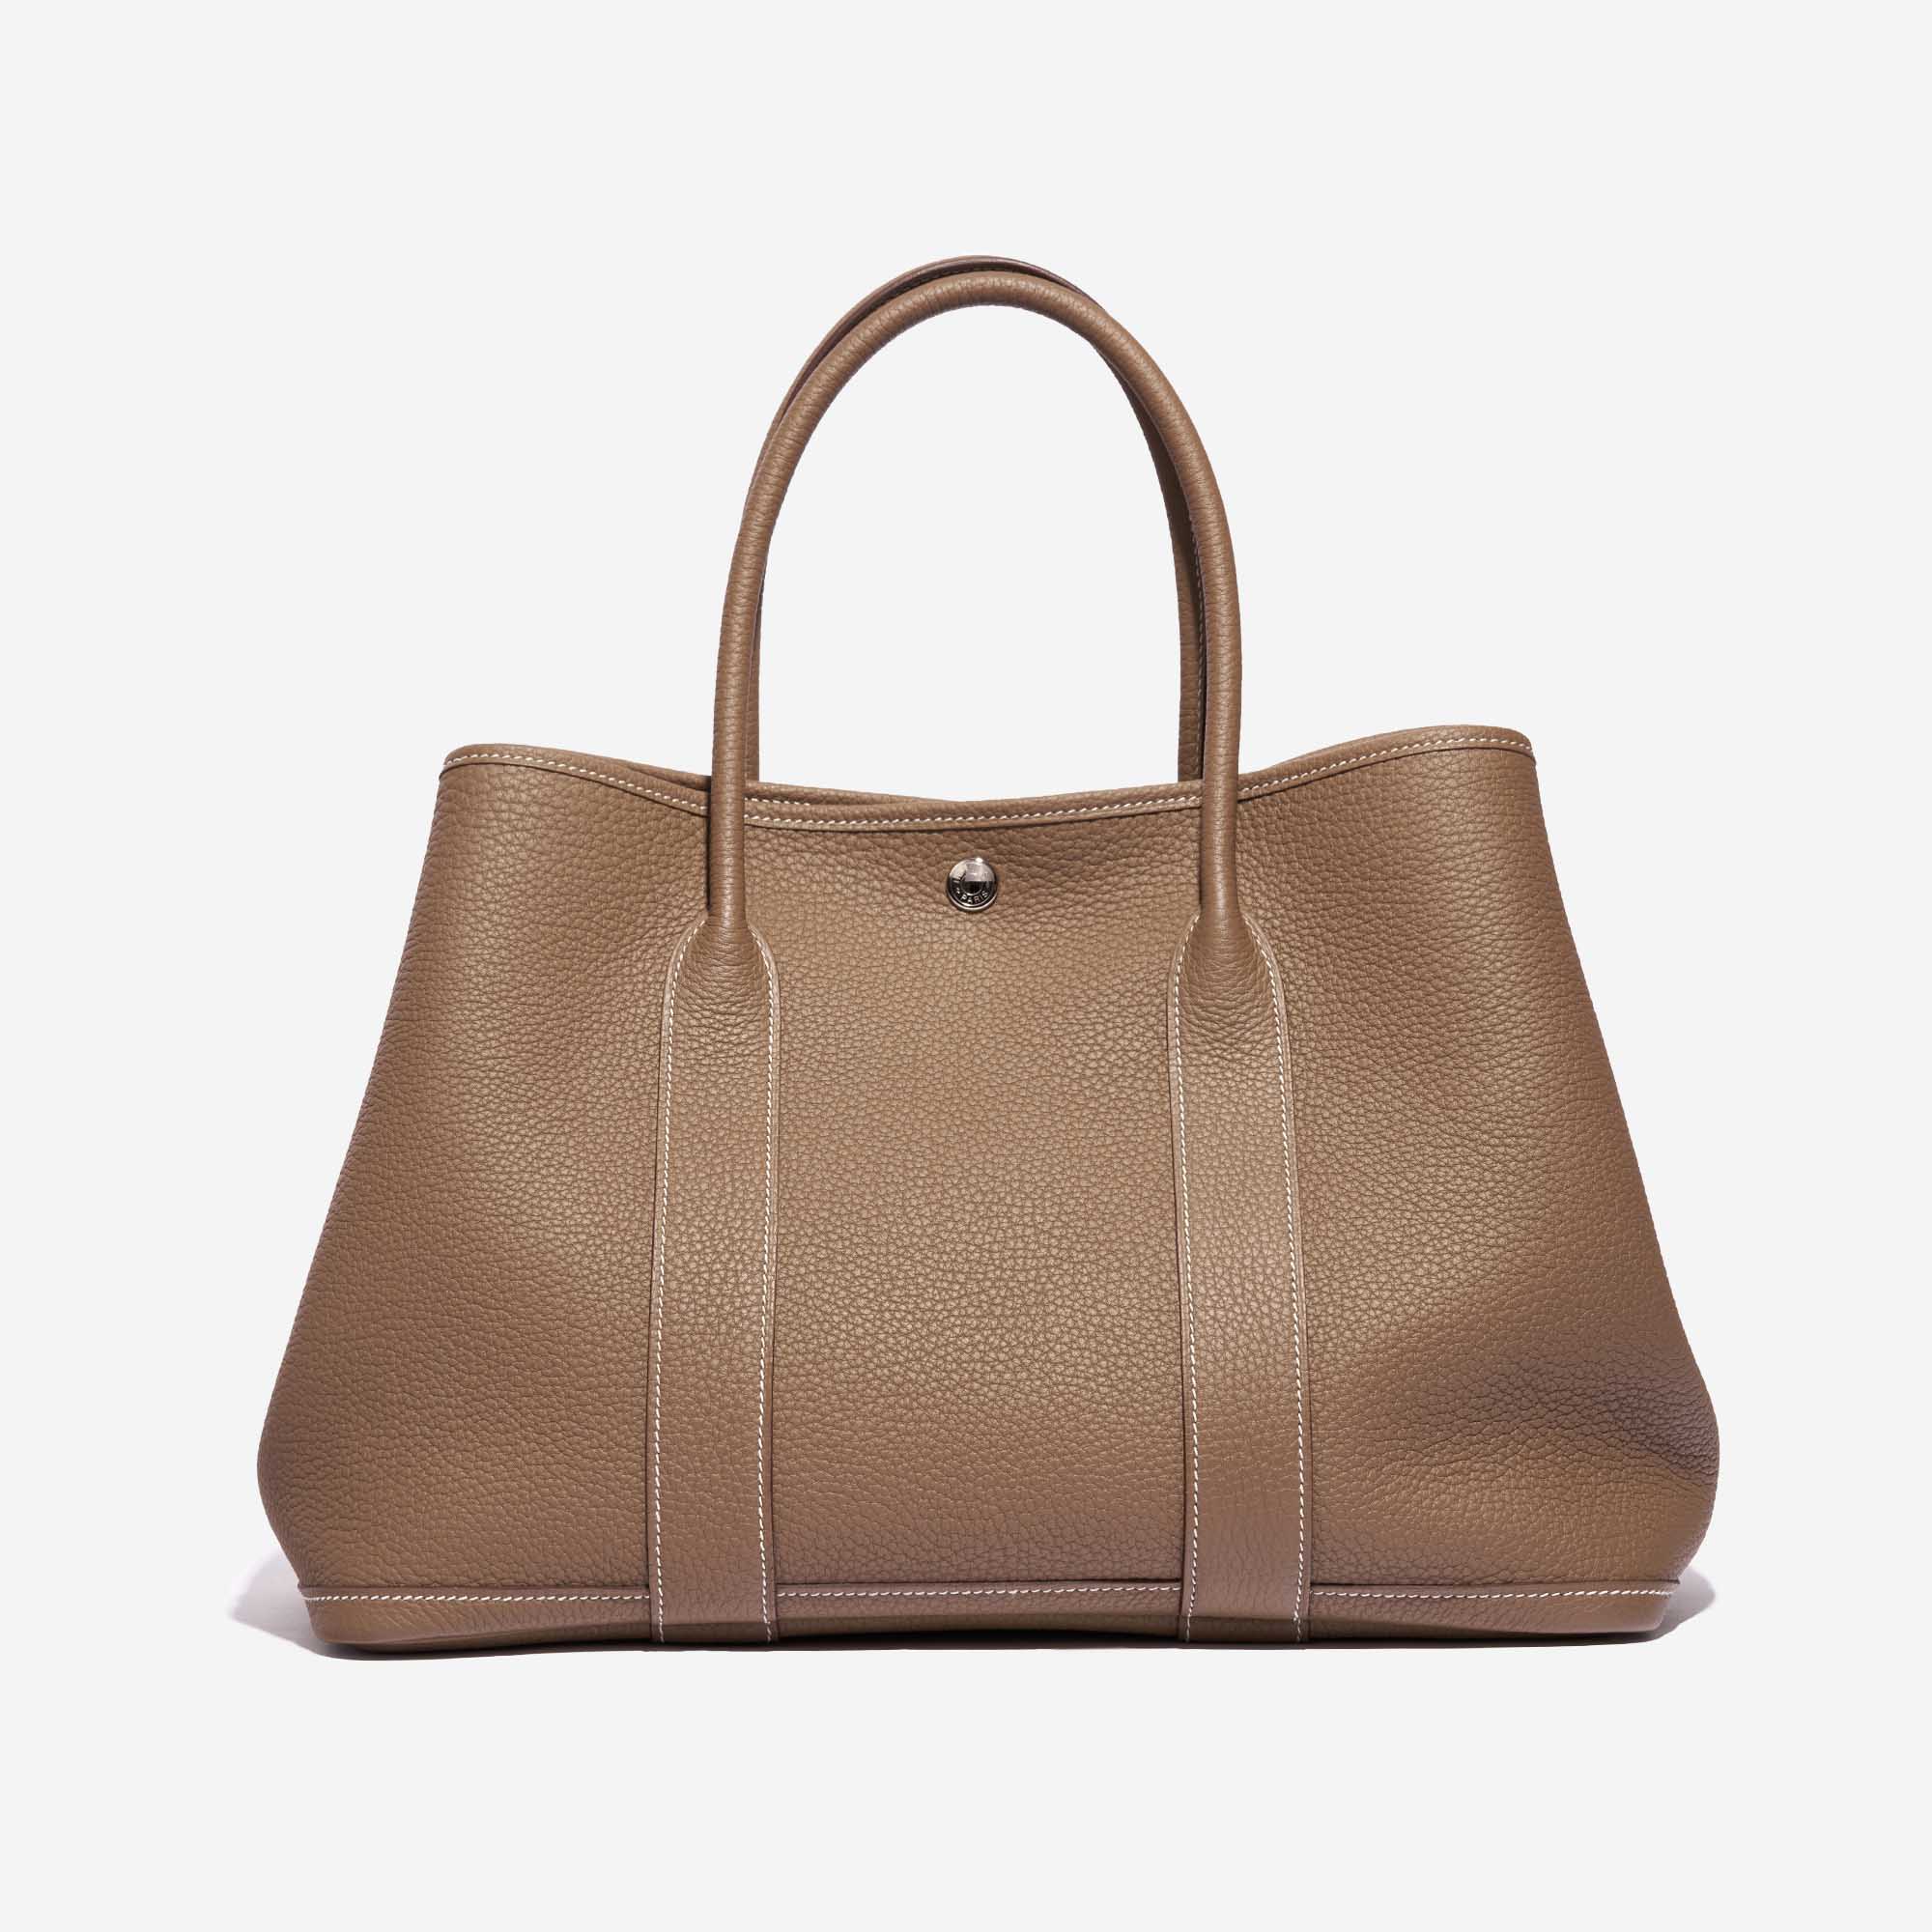 Hermès 2015 Garden Party 36 Handbag · INTO